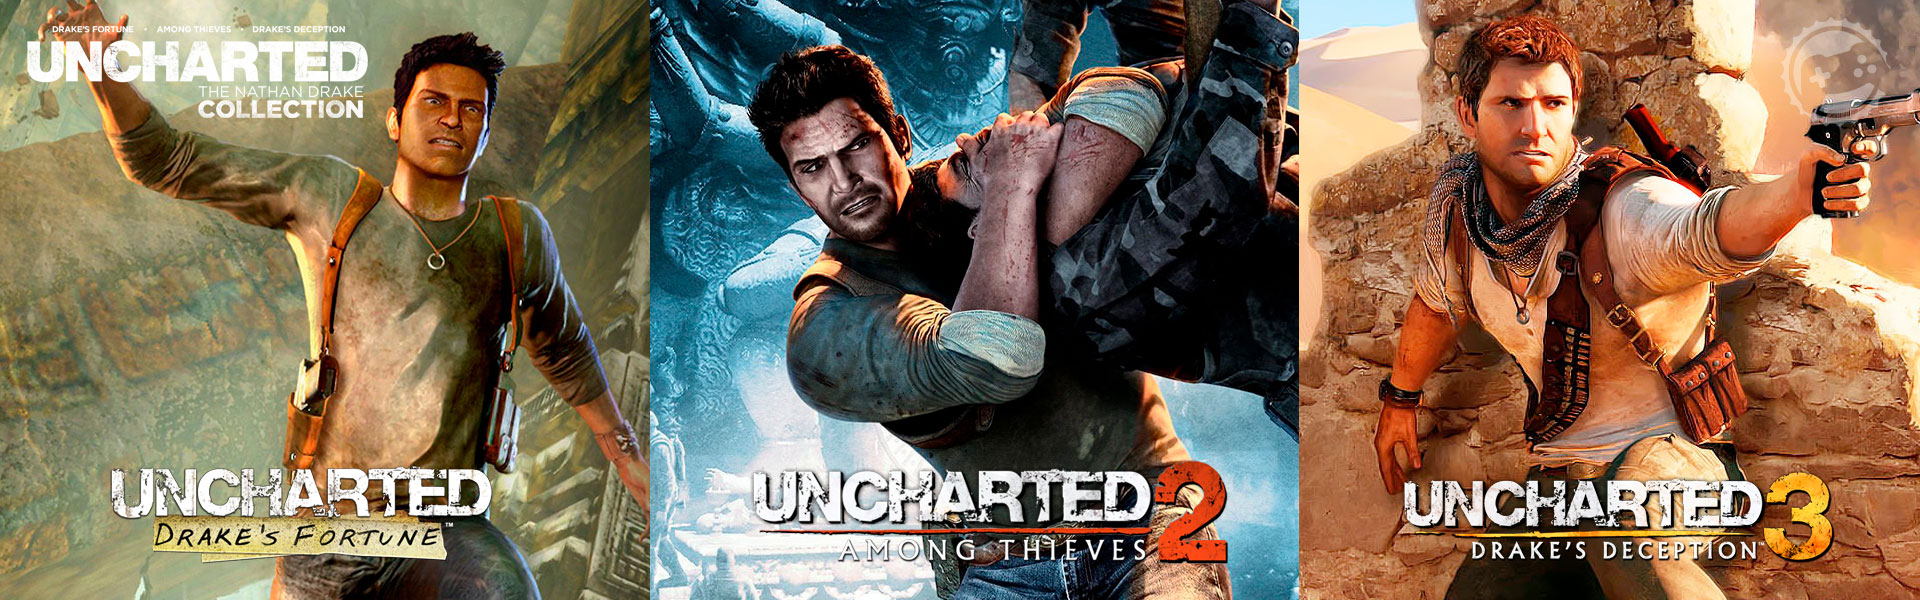 10 anos atrás, Uncharted redefiniu o que esperar dos games de PlayStation  - 22/11/2017 - UOL Start